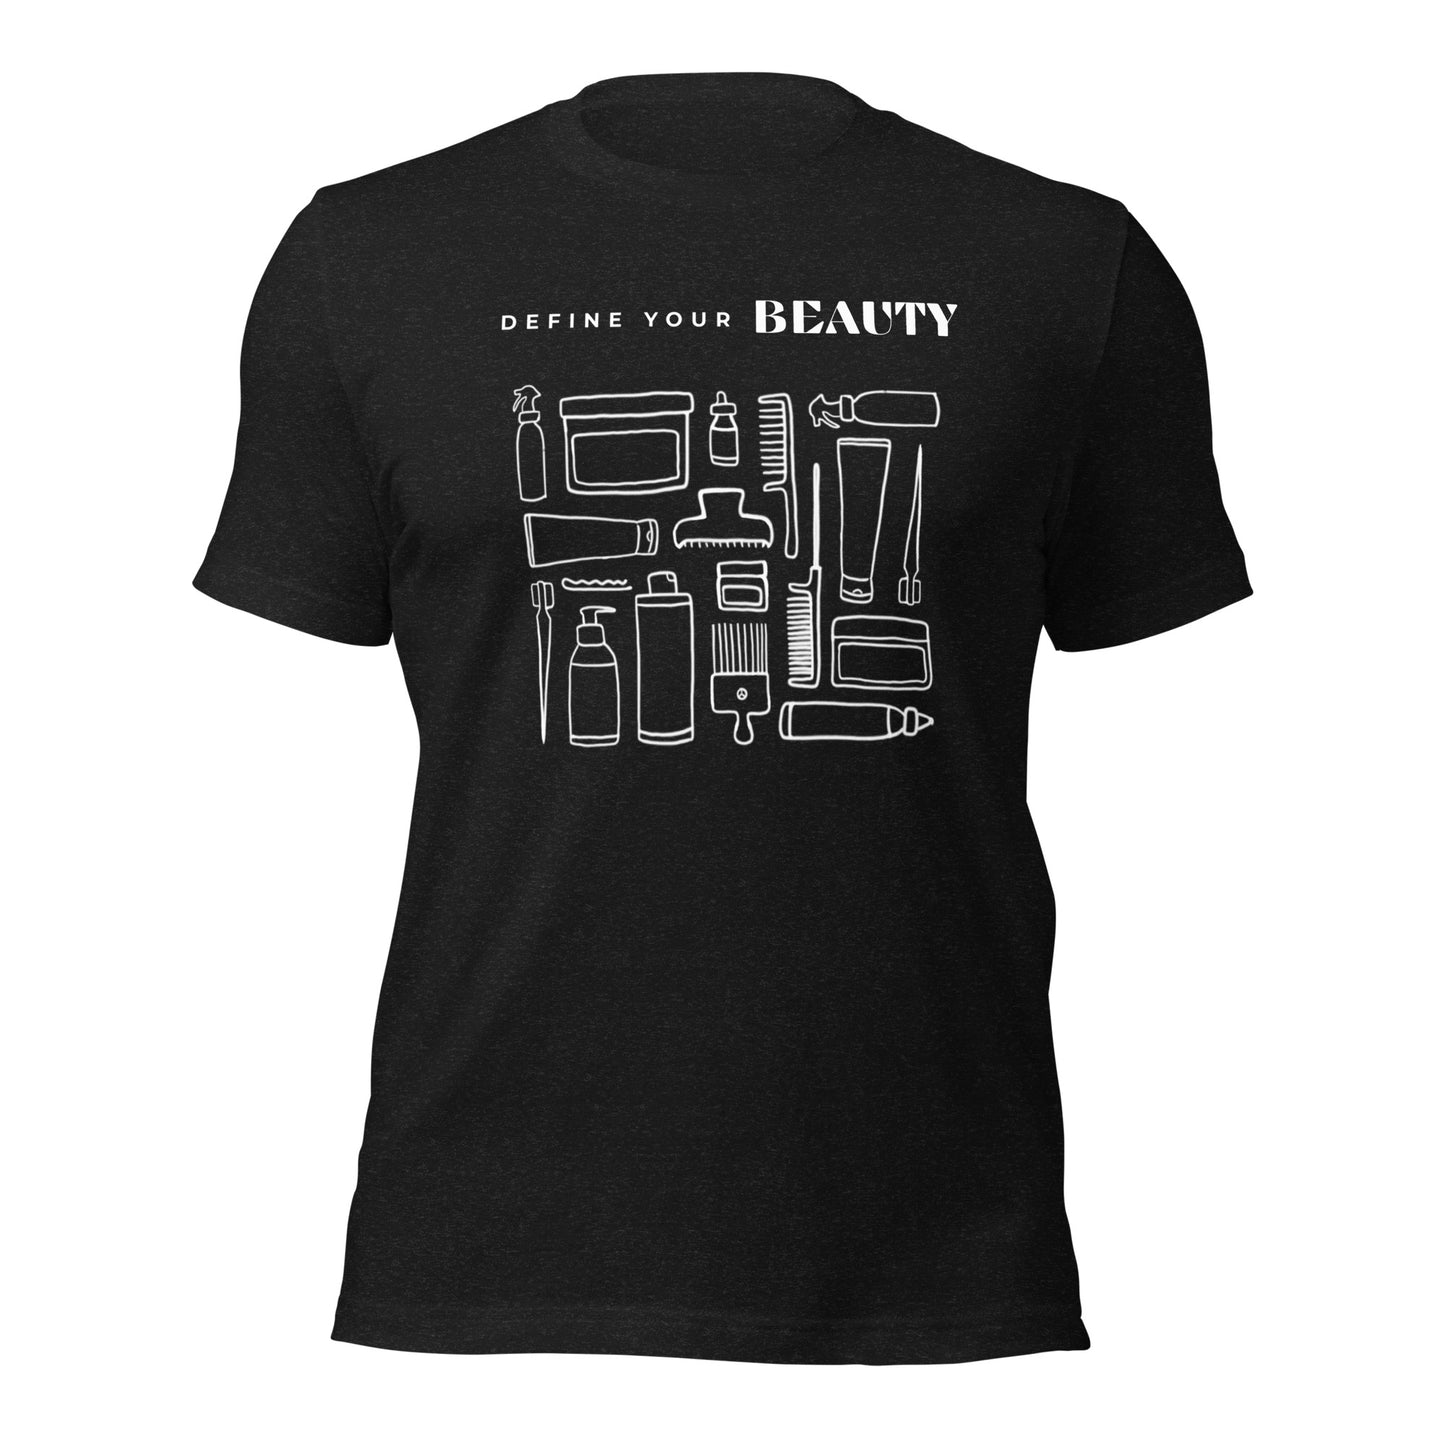 Define Your Beauty White Text Unisex T-Shirt